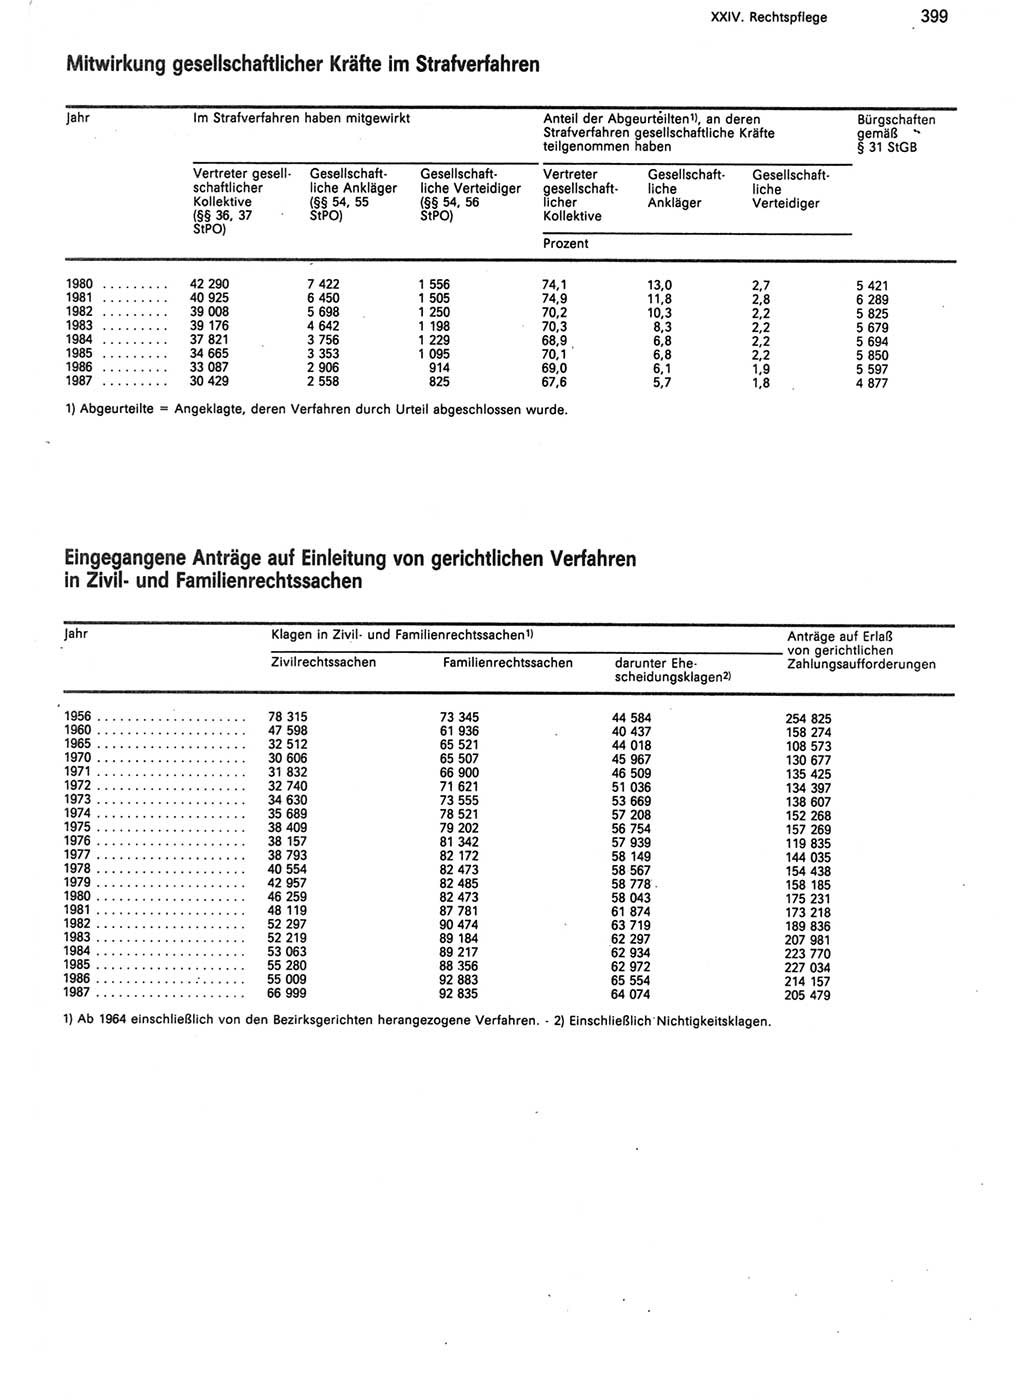 Statistisches Jahrbuch der Deutschen Demokratischen Republik (DDR) 1988, Seite 399 (Stat. Jb. DDR 1988, S. 399)